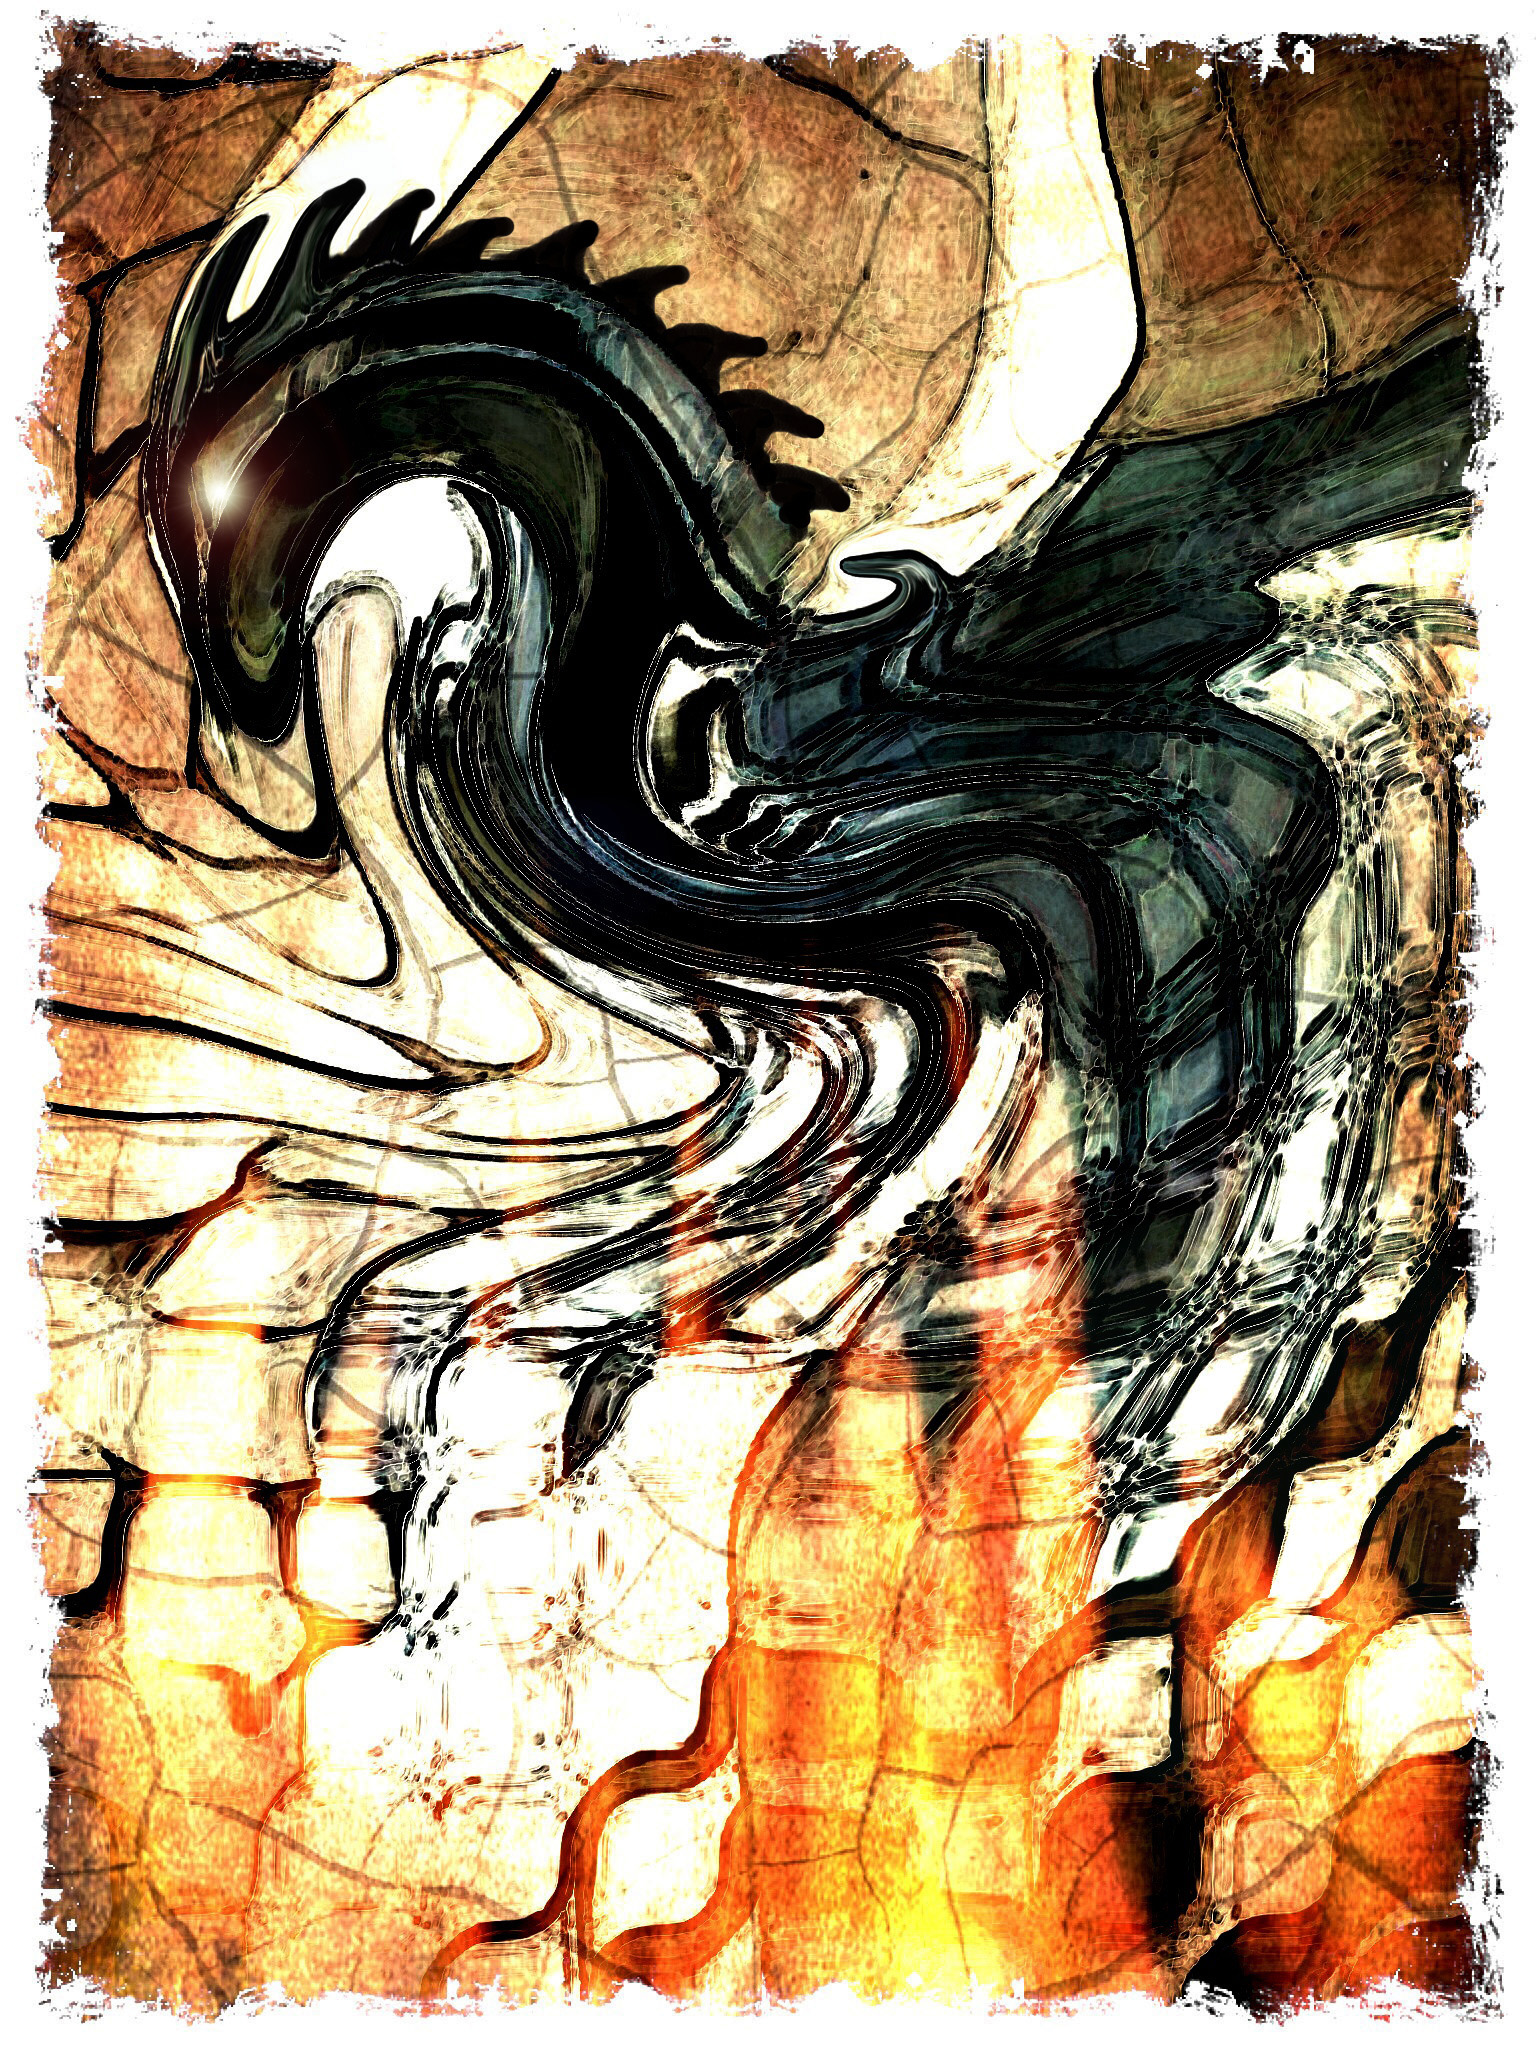 Black Dragon, by Richard Ong